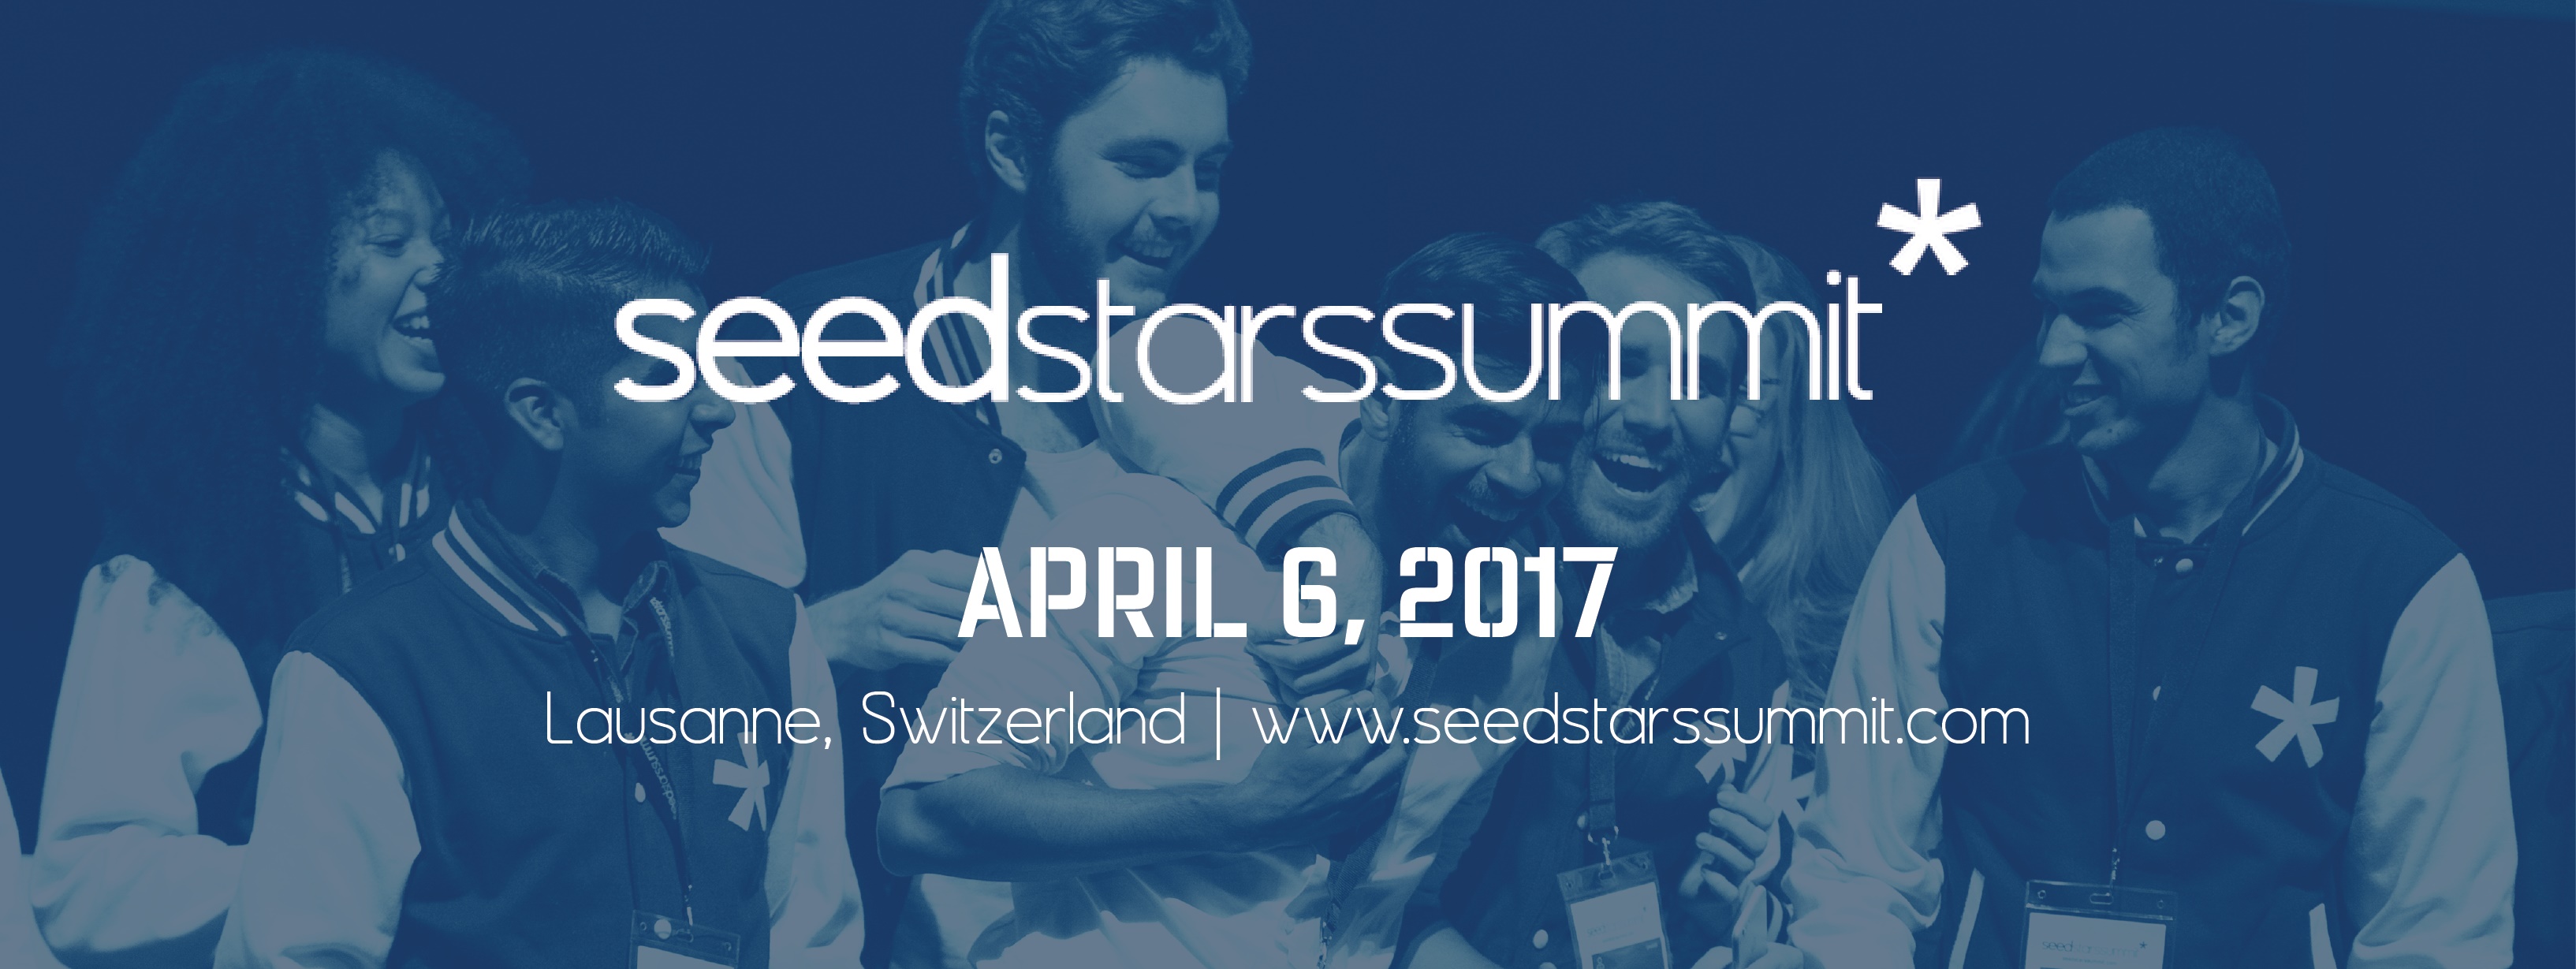 Seedstars summit